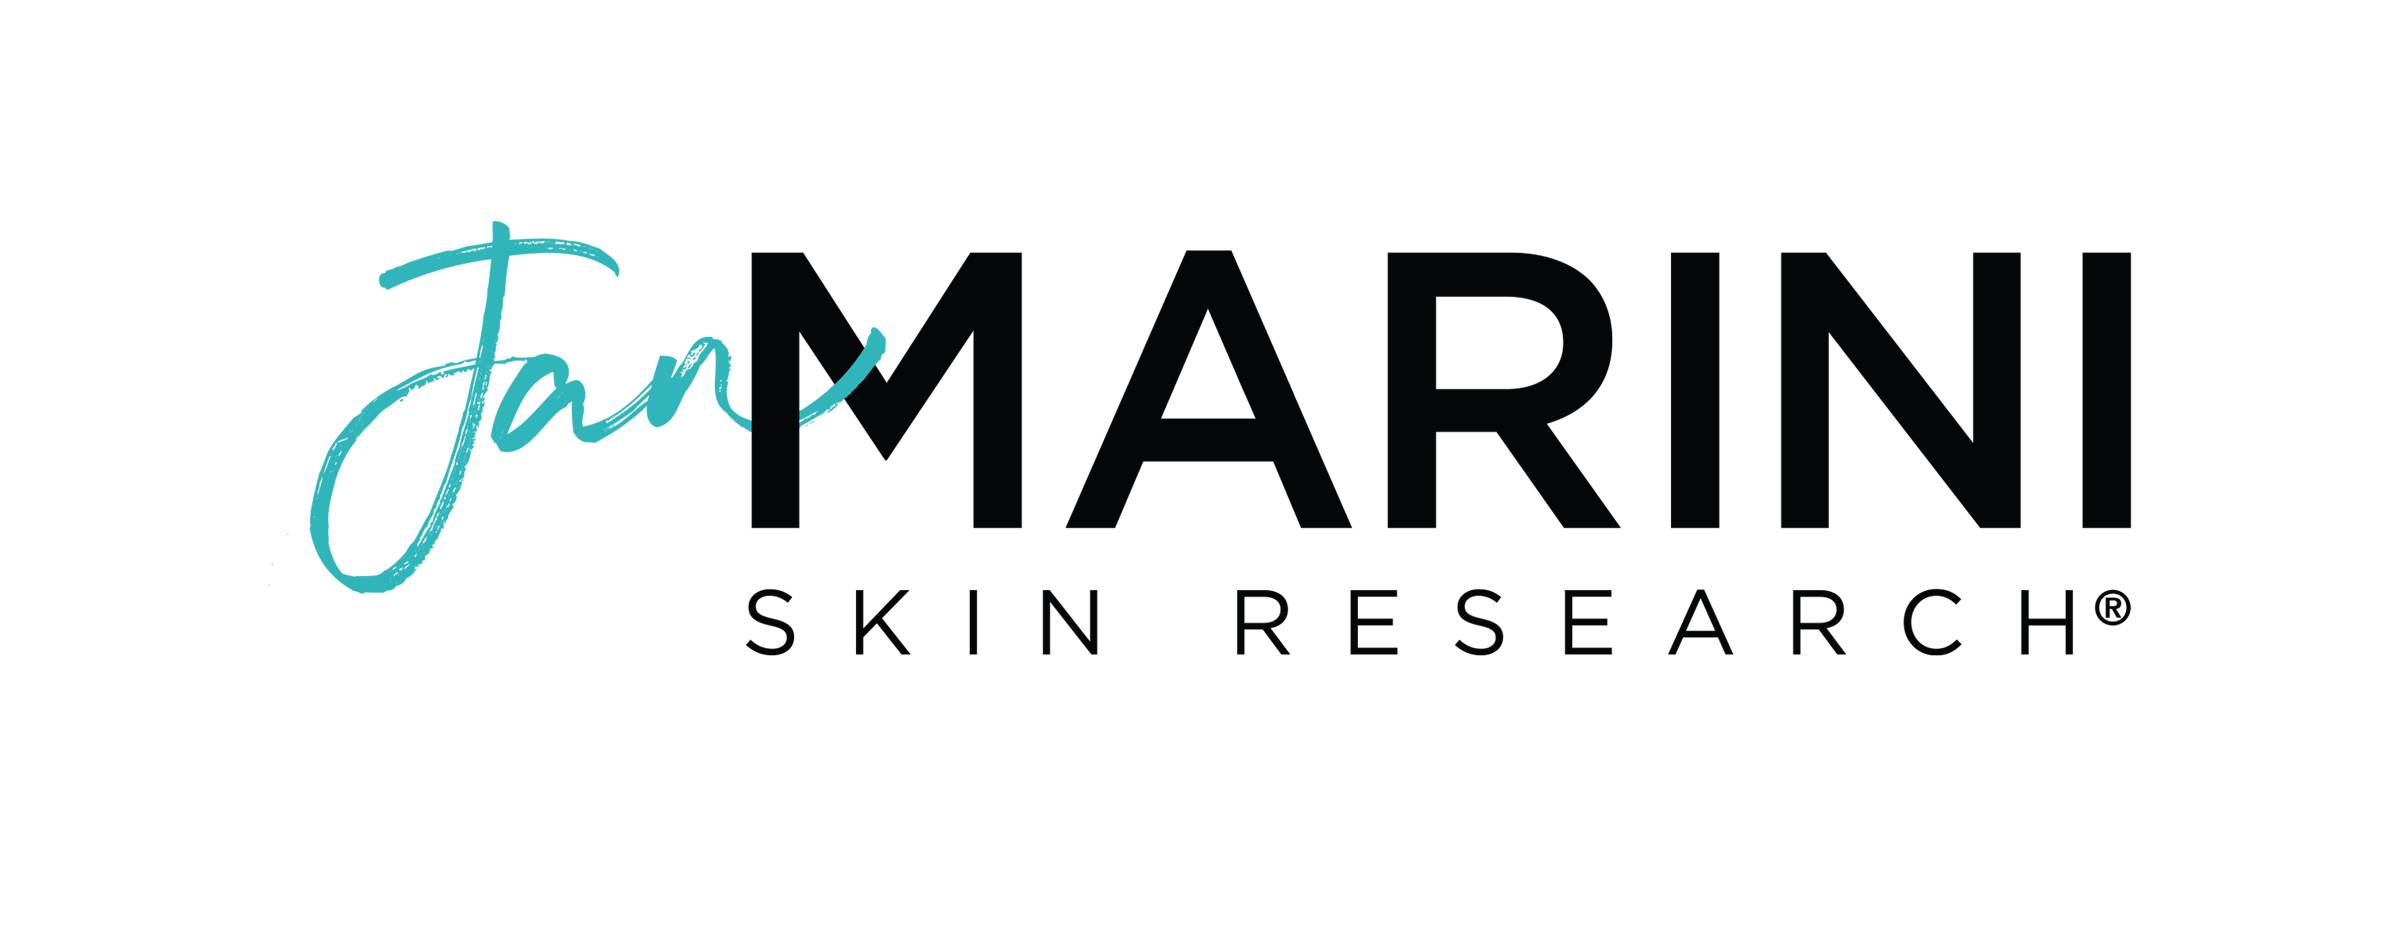 Tan Marini Skin Research logo